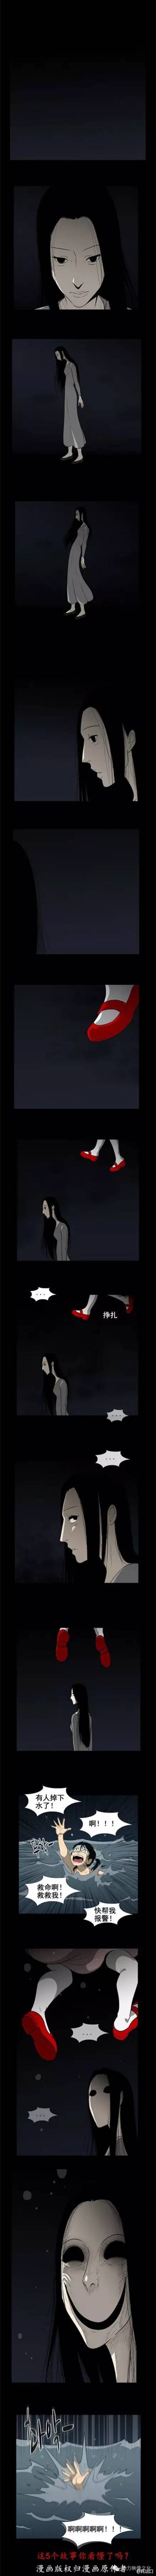 韩国漫画《红皮书系列》-黑白漫话